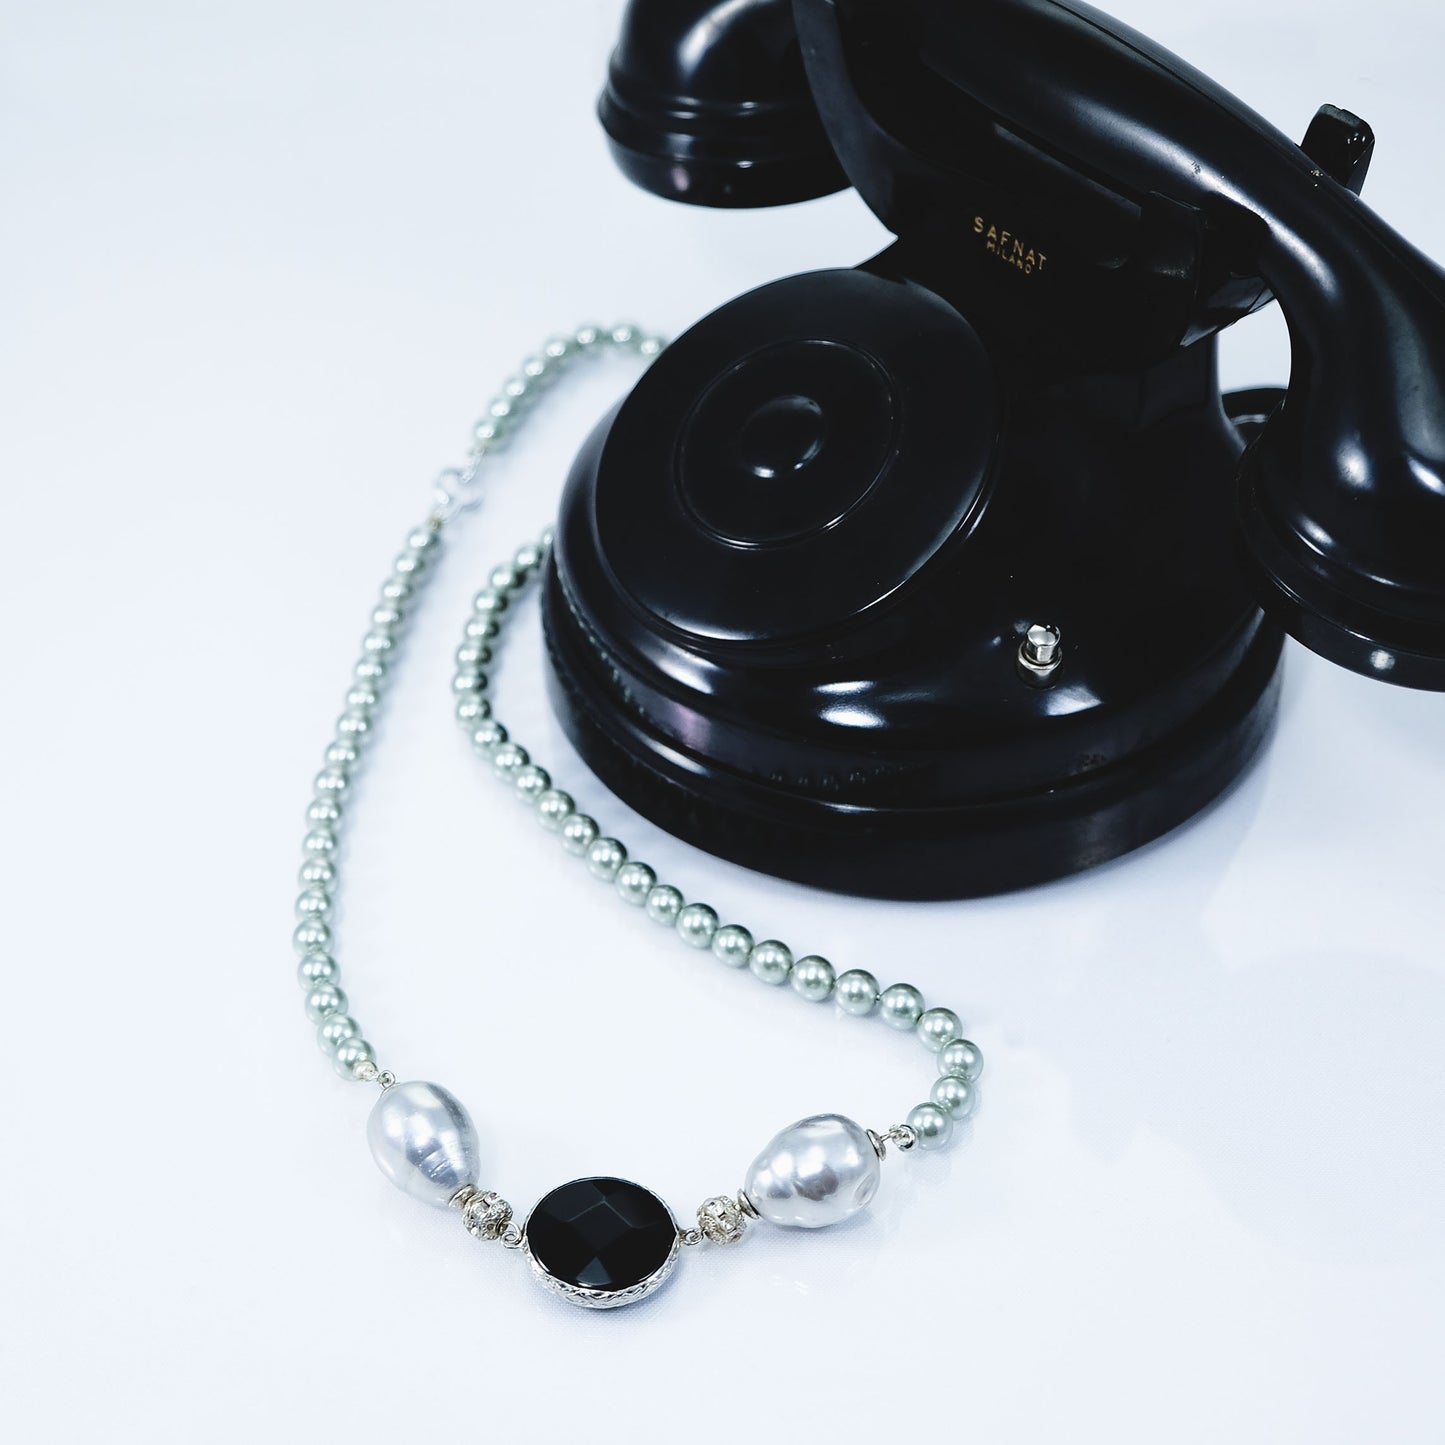 Collana LE PERLE .031 perle grigie, gradi perle barocche e cristallo nero incastonato.